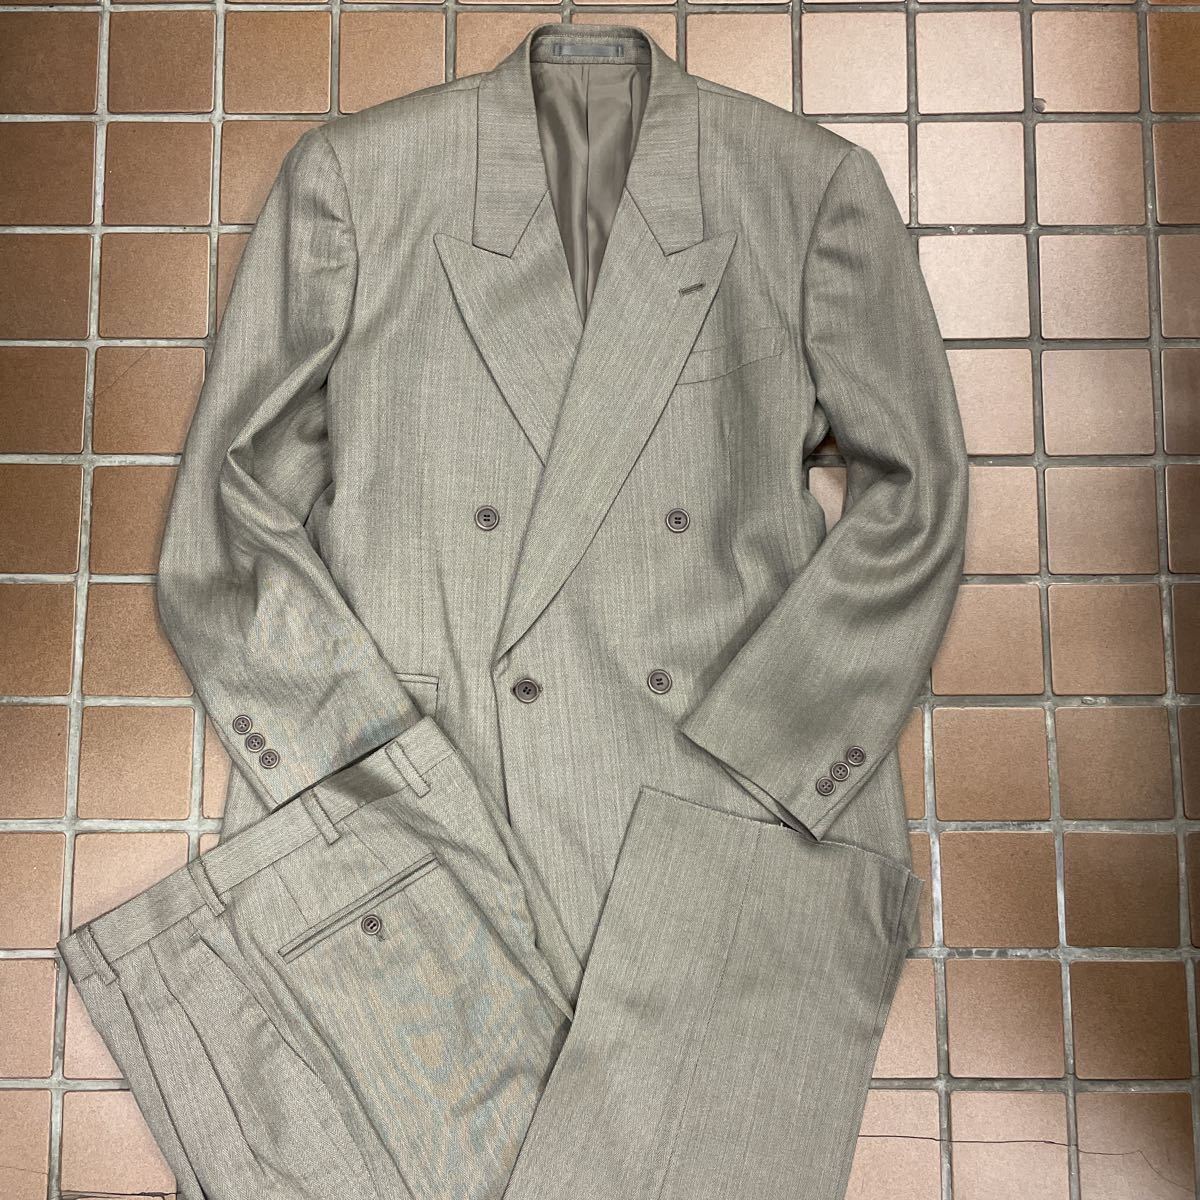 ヤフオク! -「90年代 スーツ」(ファッション) の落札相場・落札価格